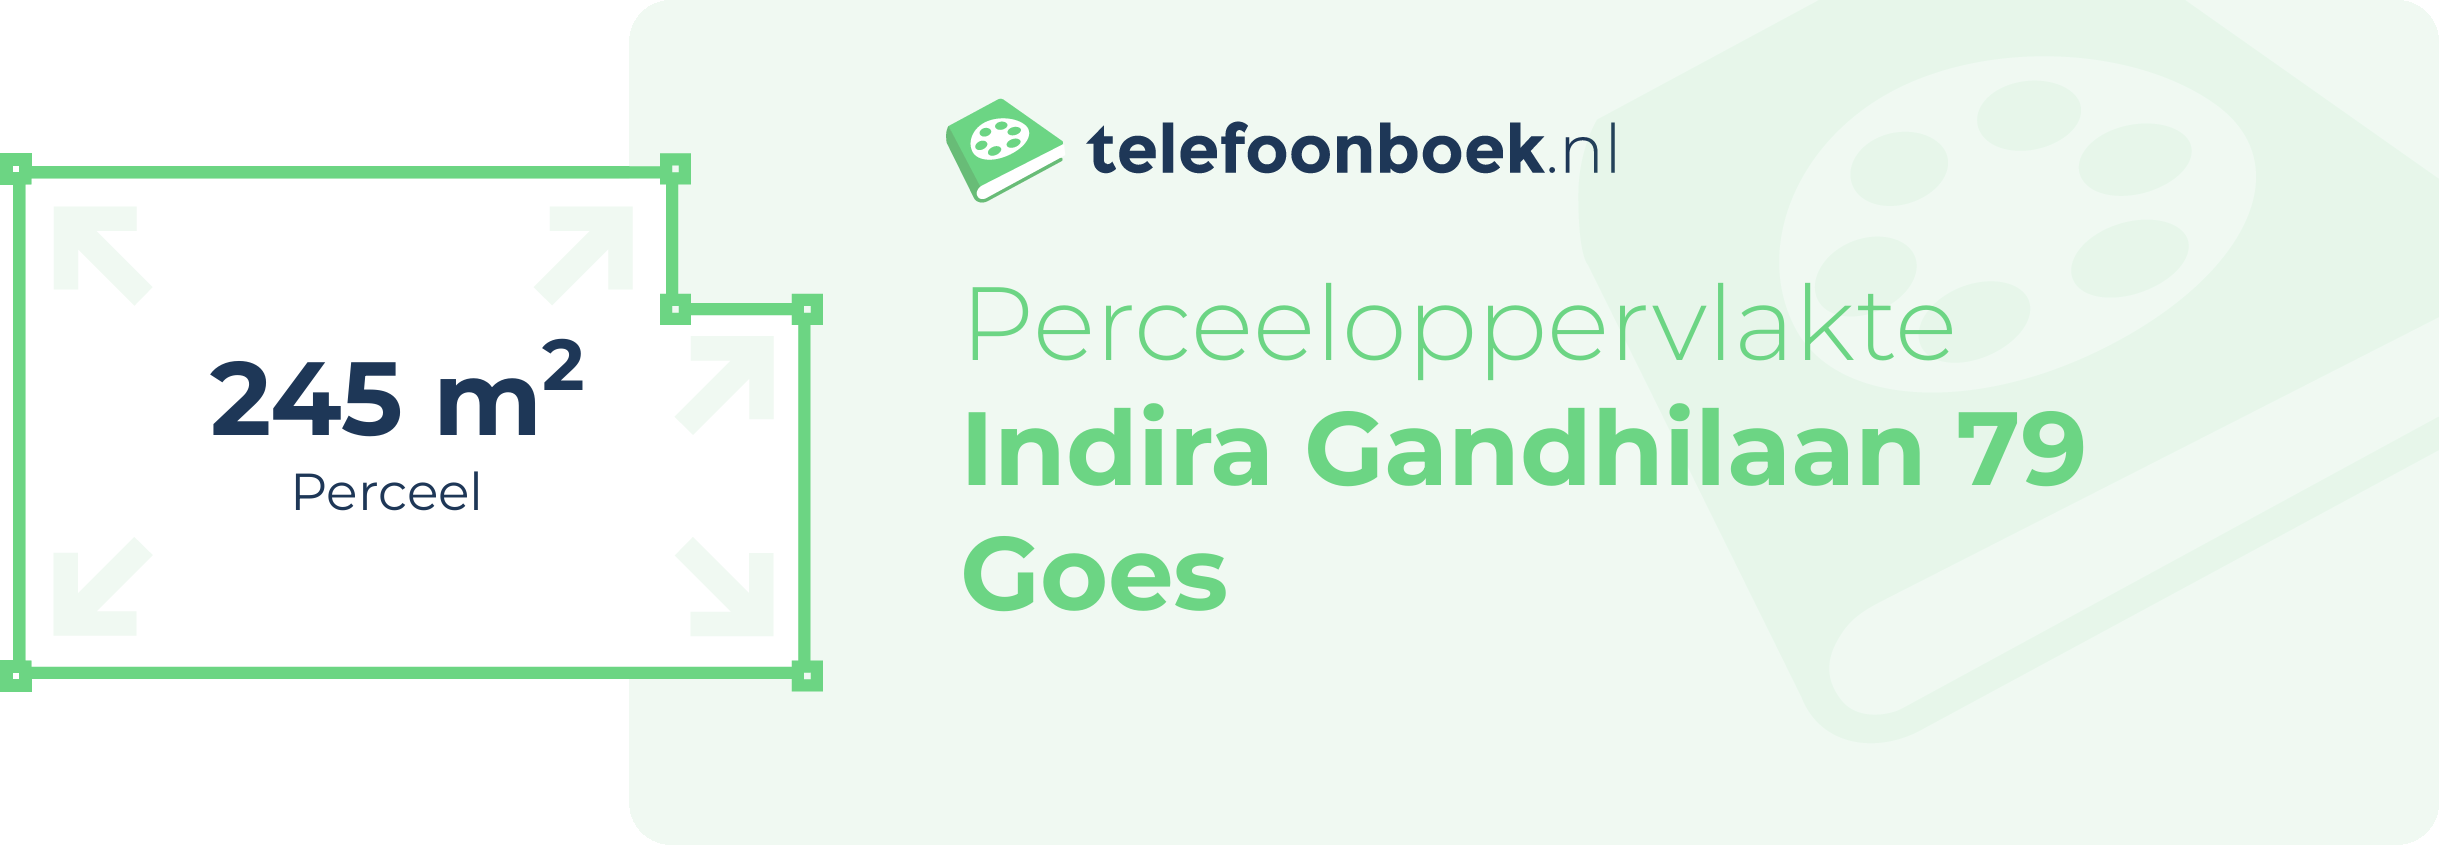 Perceeloppervlakte Indira Gandhilaan 79 Goes